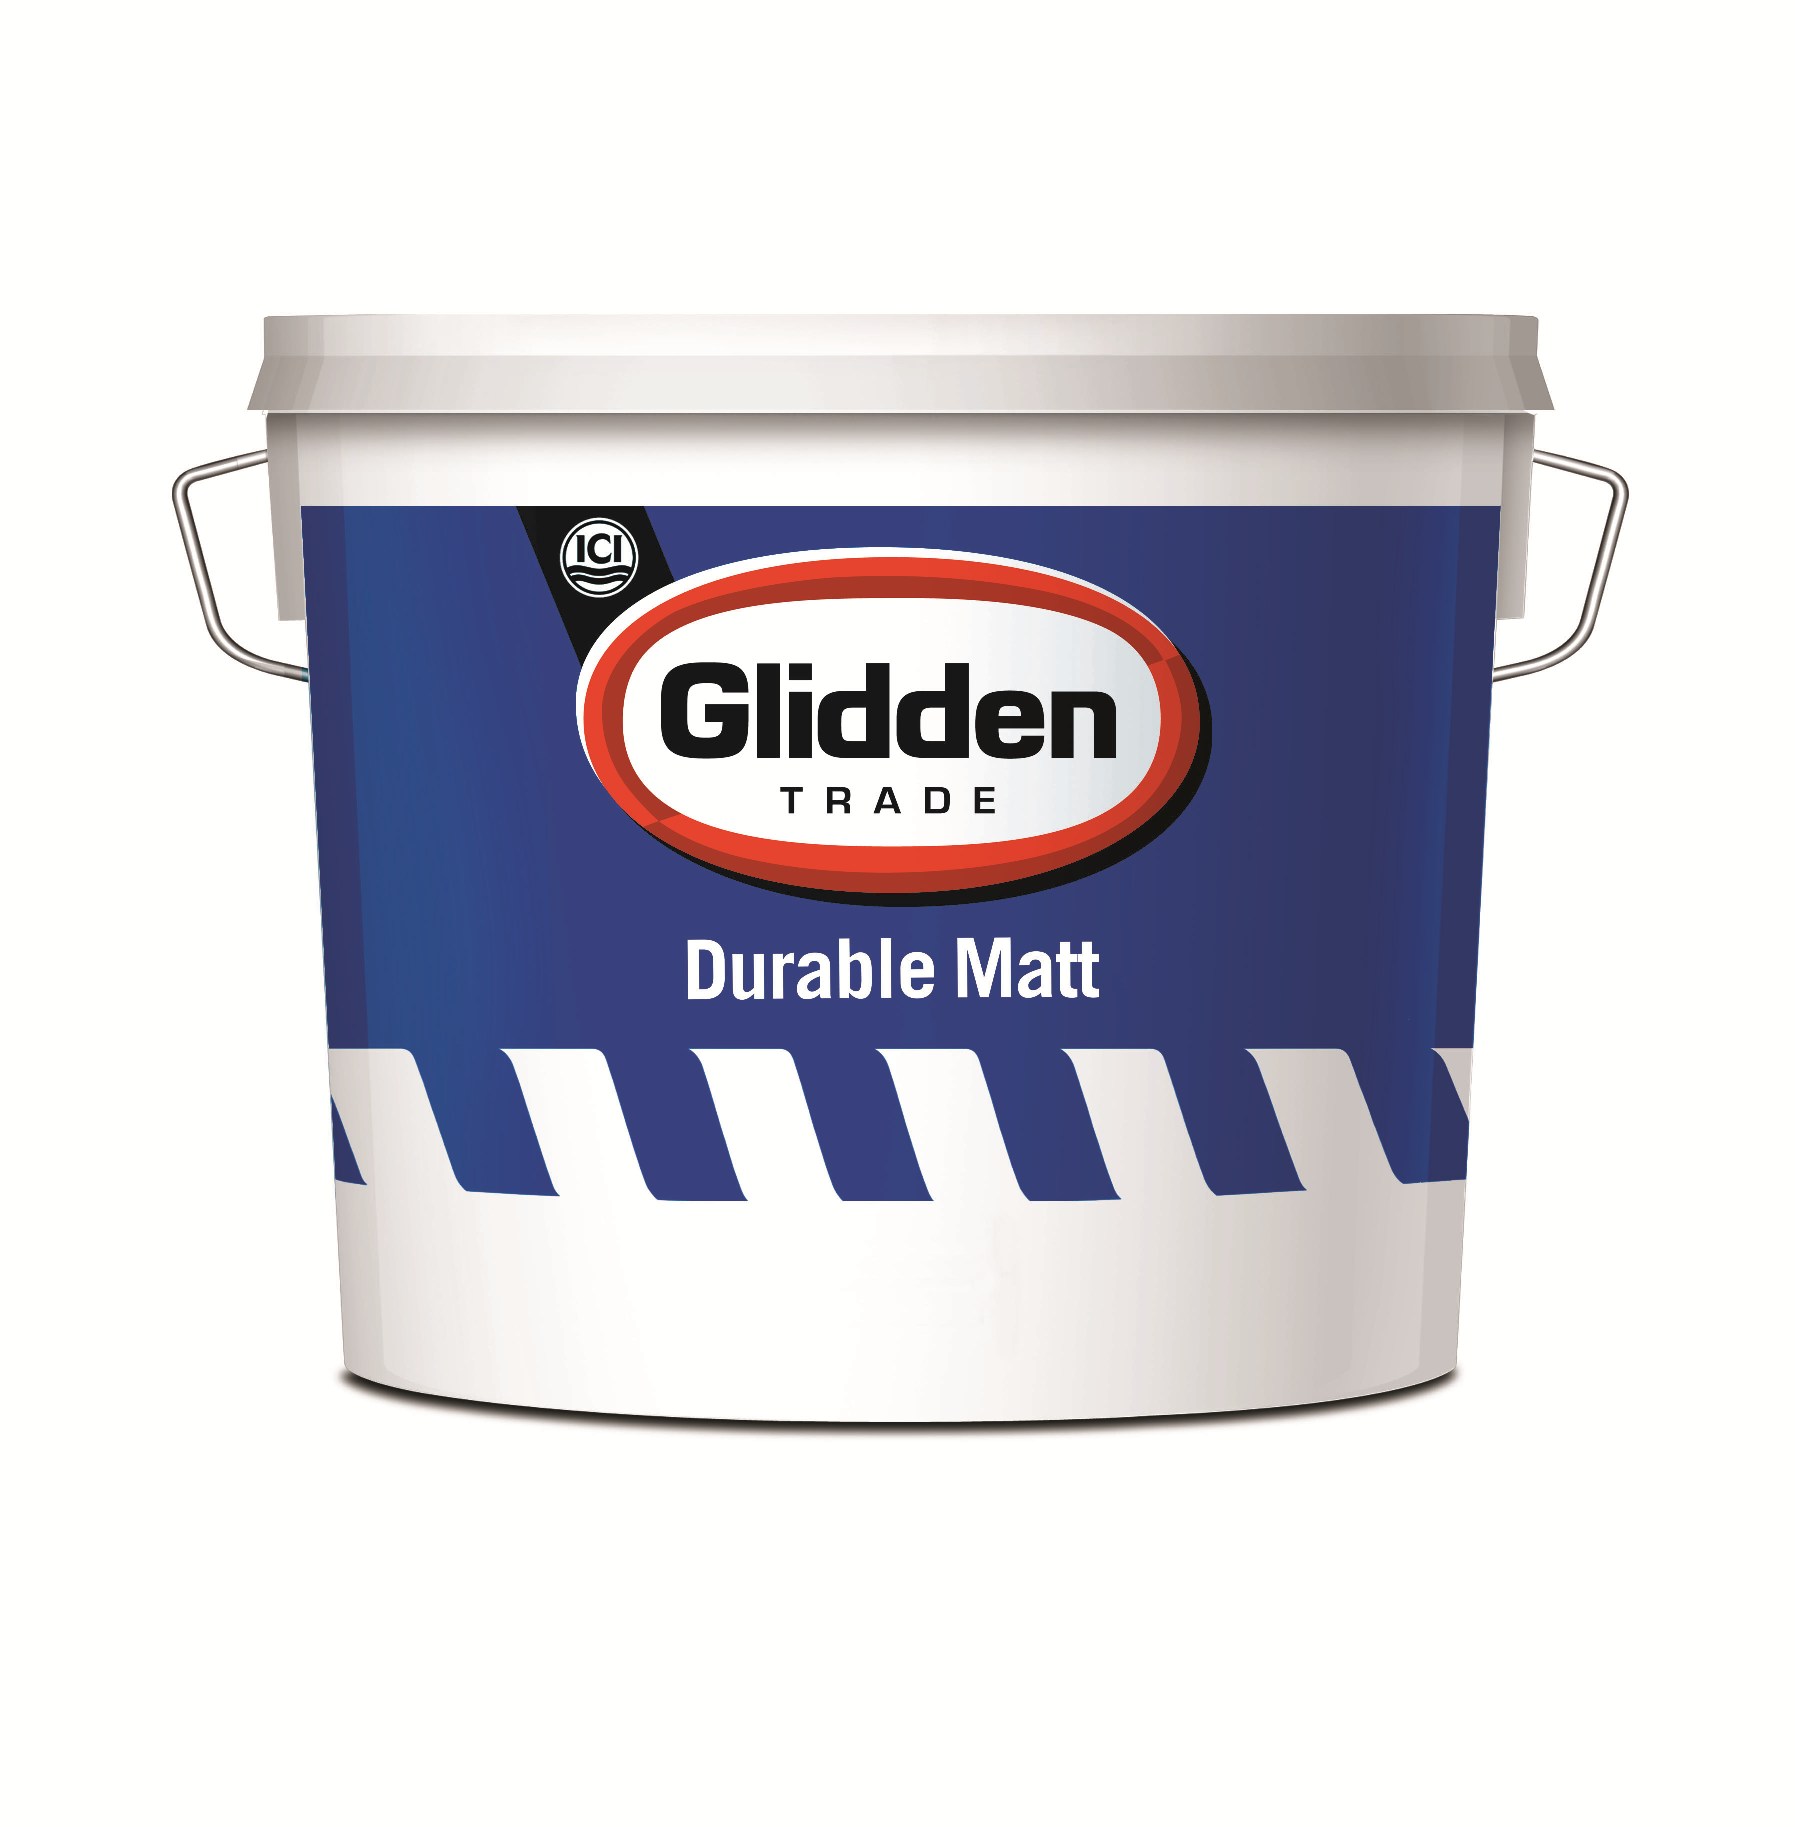 Glidden Trade Lifts The Lid On New Durable Matt Paint